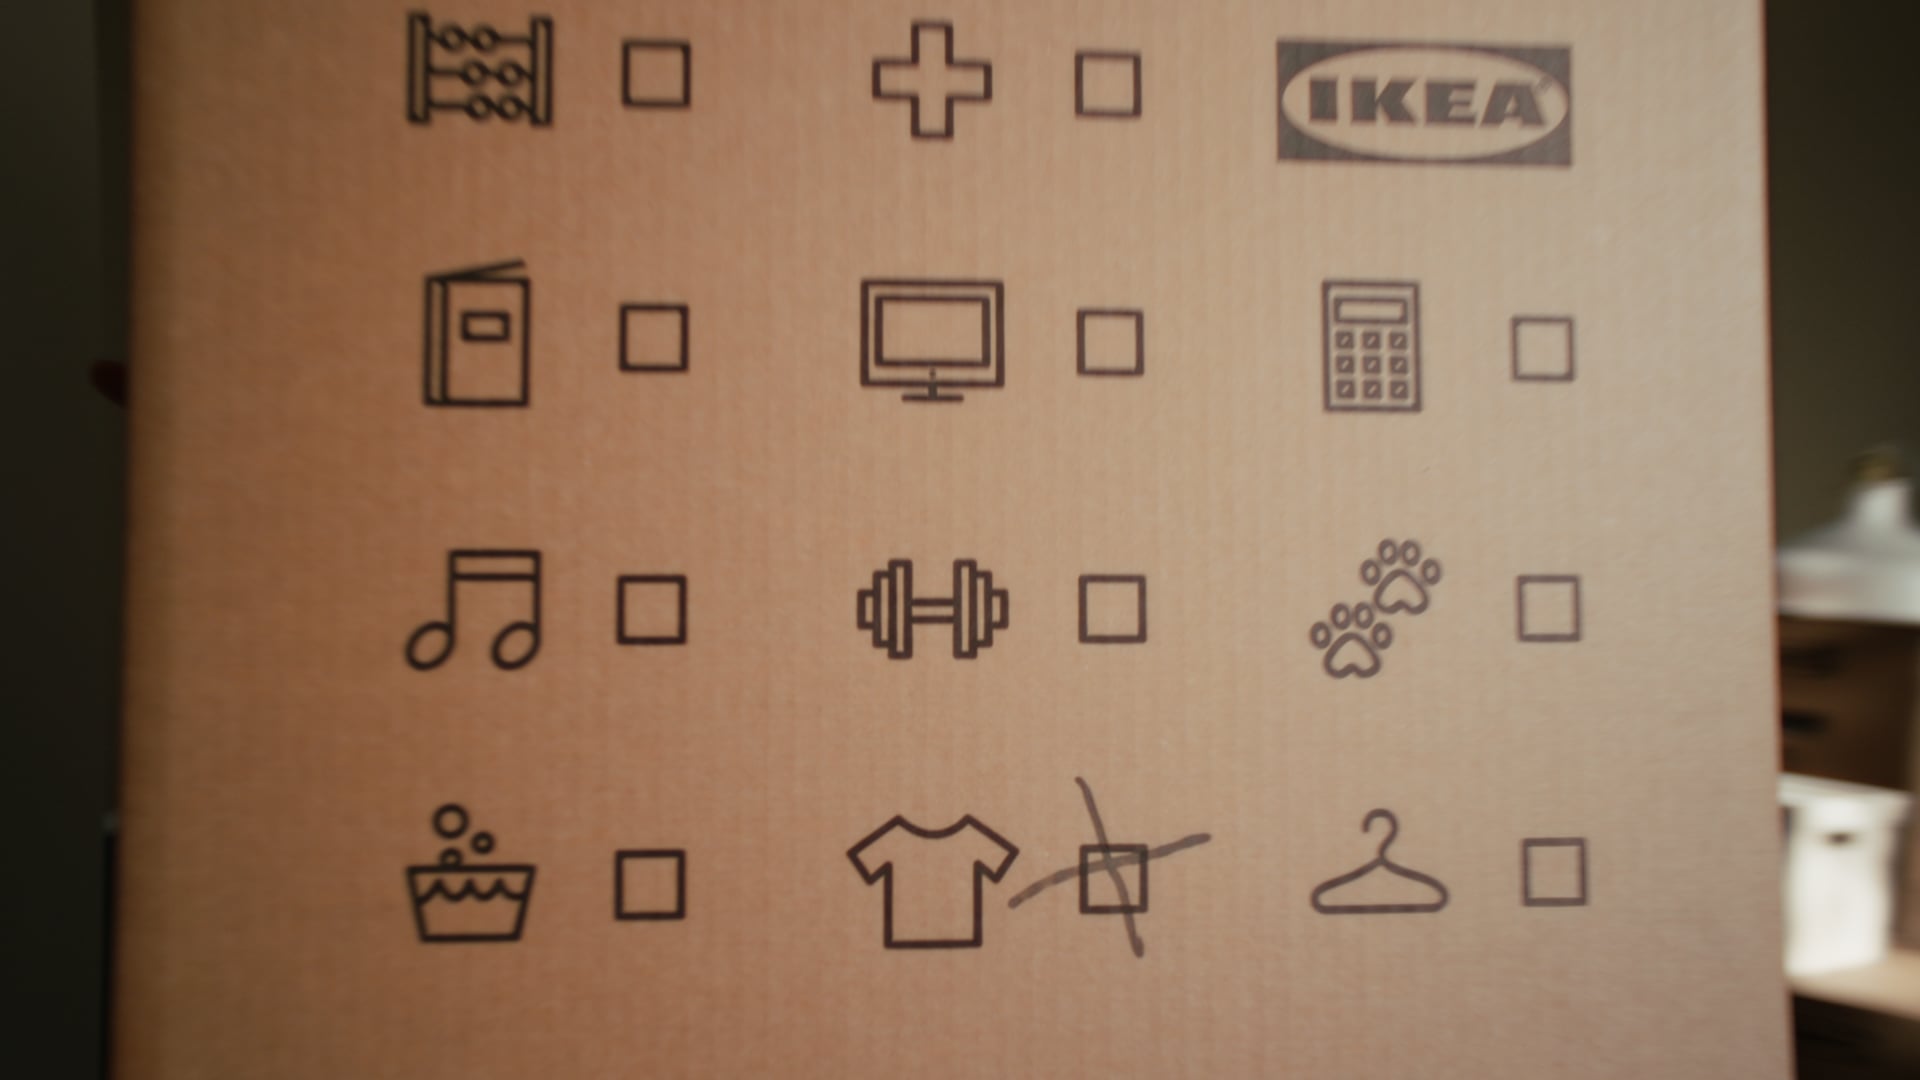 IKEA_BOXIT_16x9